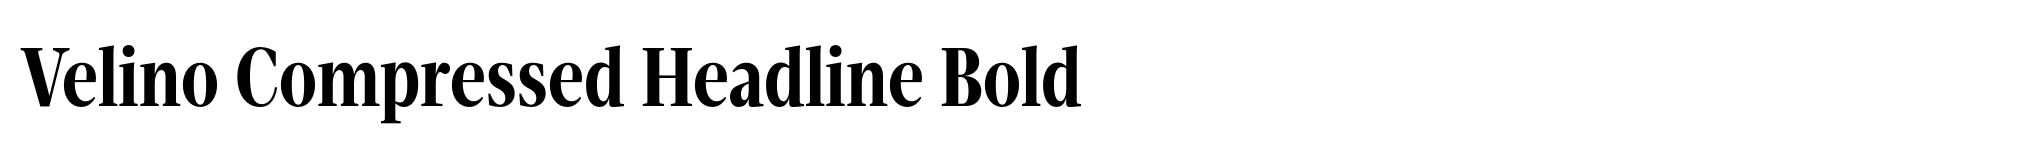 Velino Compressed Headline Bold image